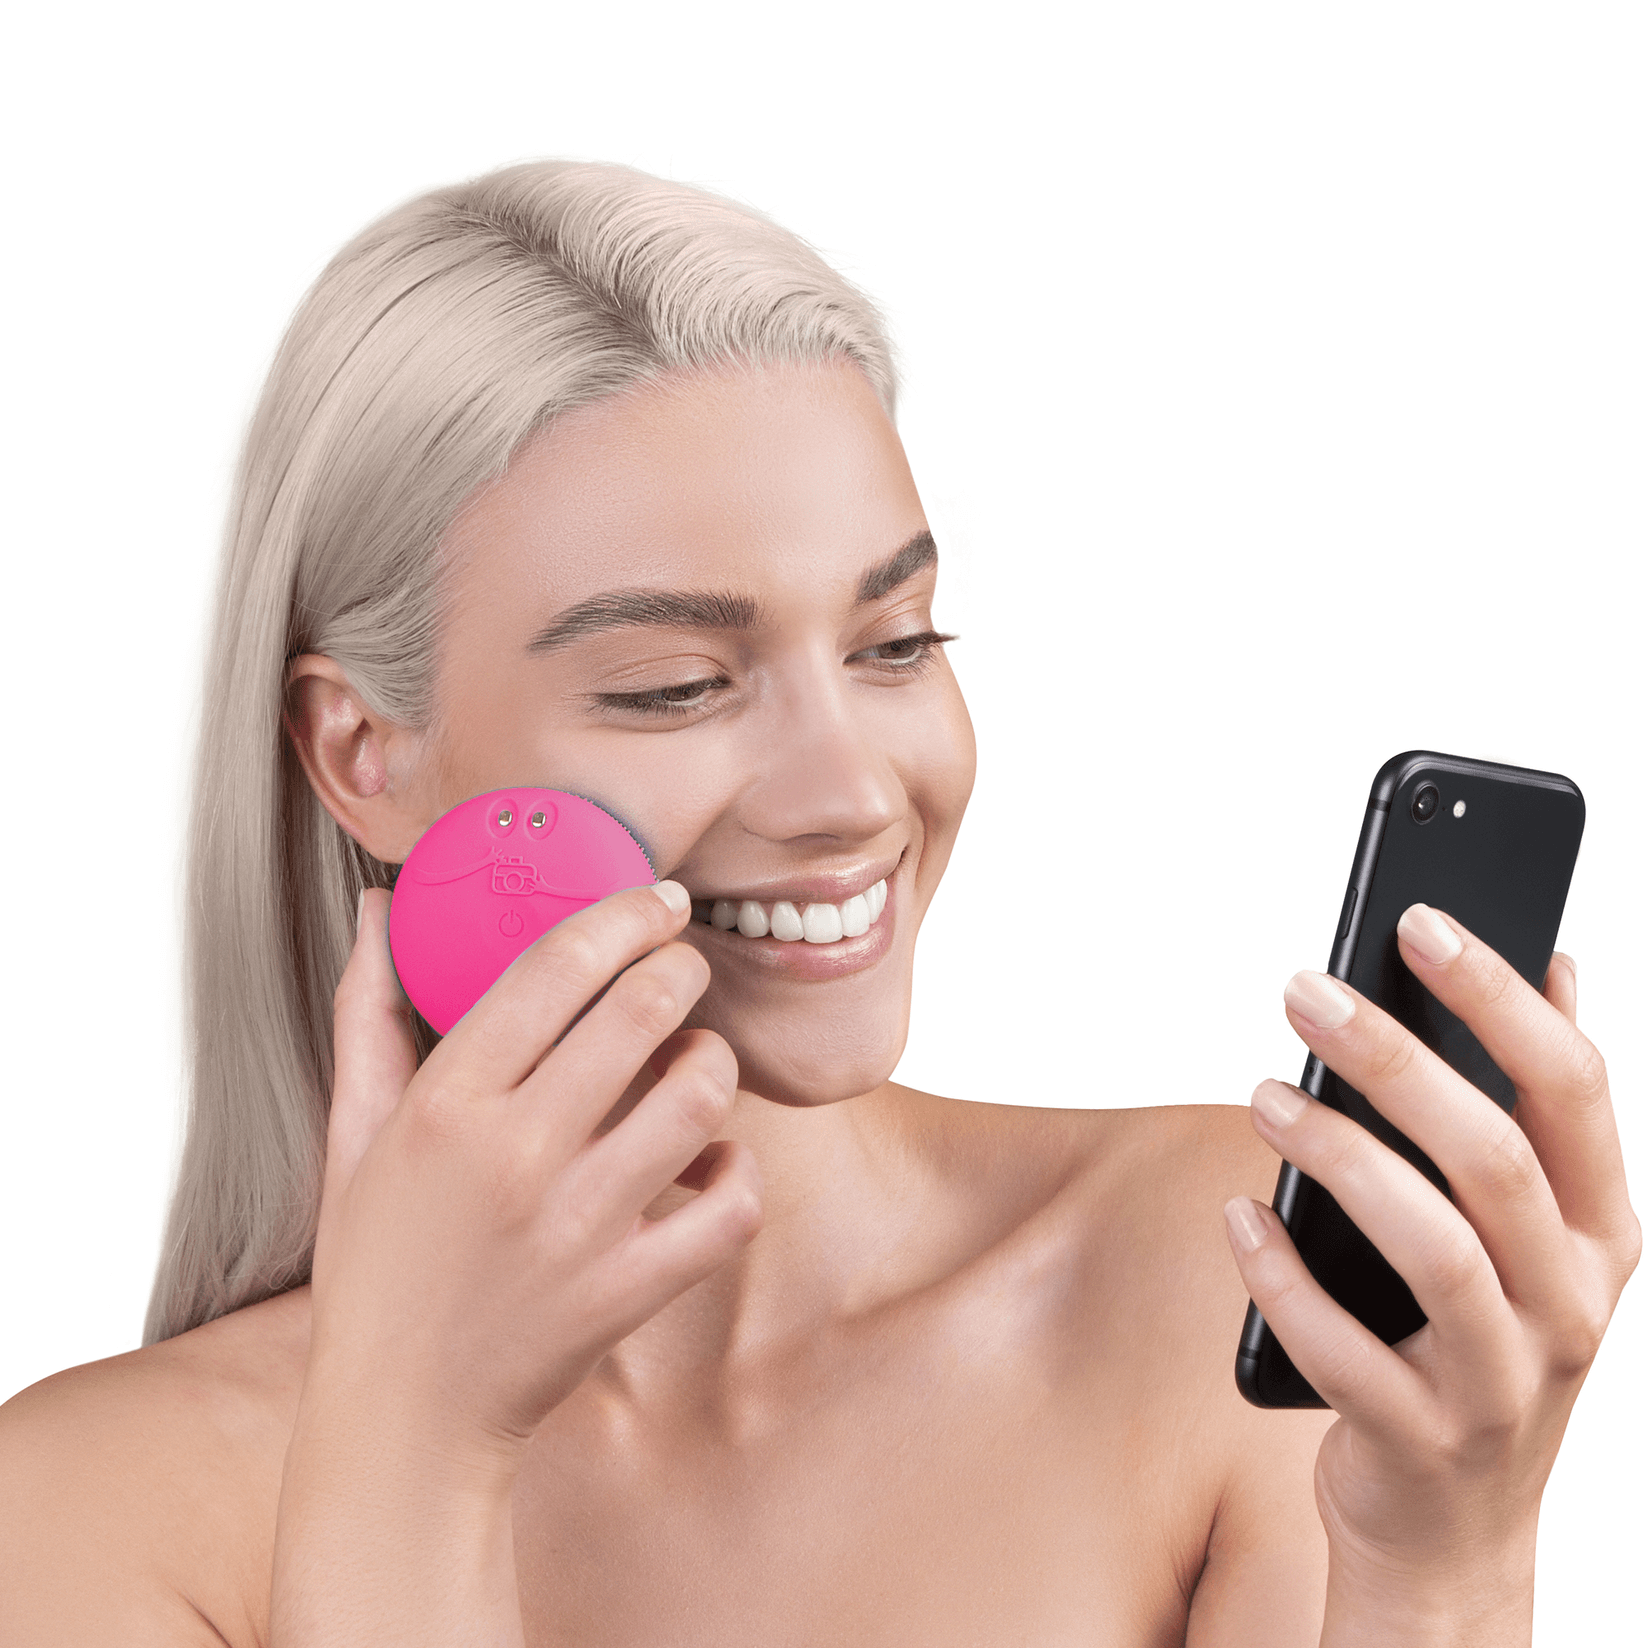 Selected image for FOREO LUNA Fofo Fuchsia pametni uređaj za čišćenje lica za senzorima za analizu kože